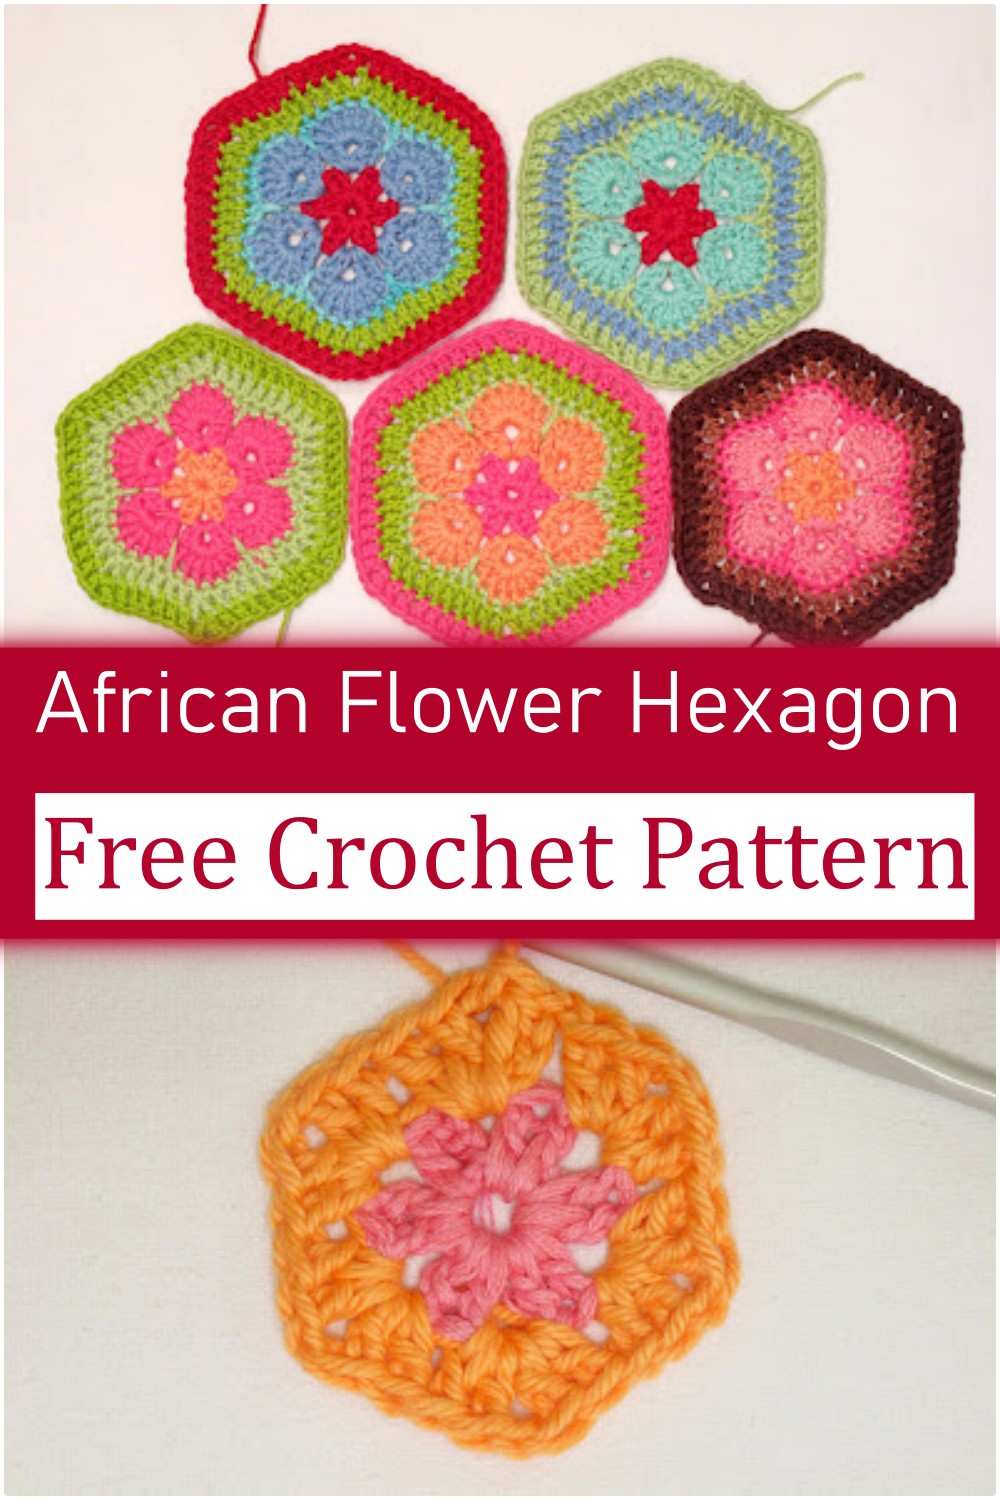 African Flower Hexagon